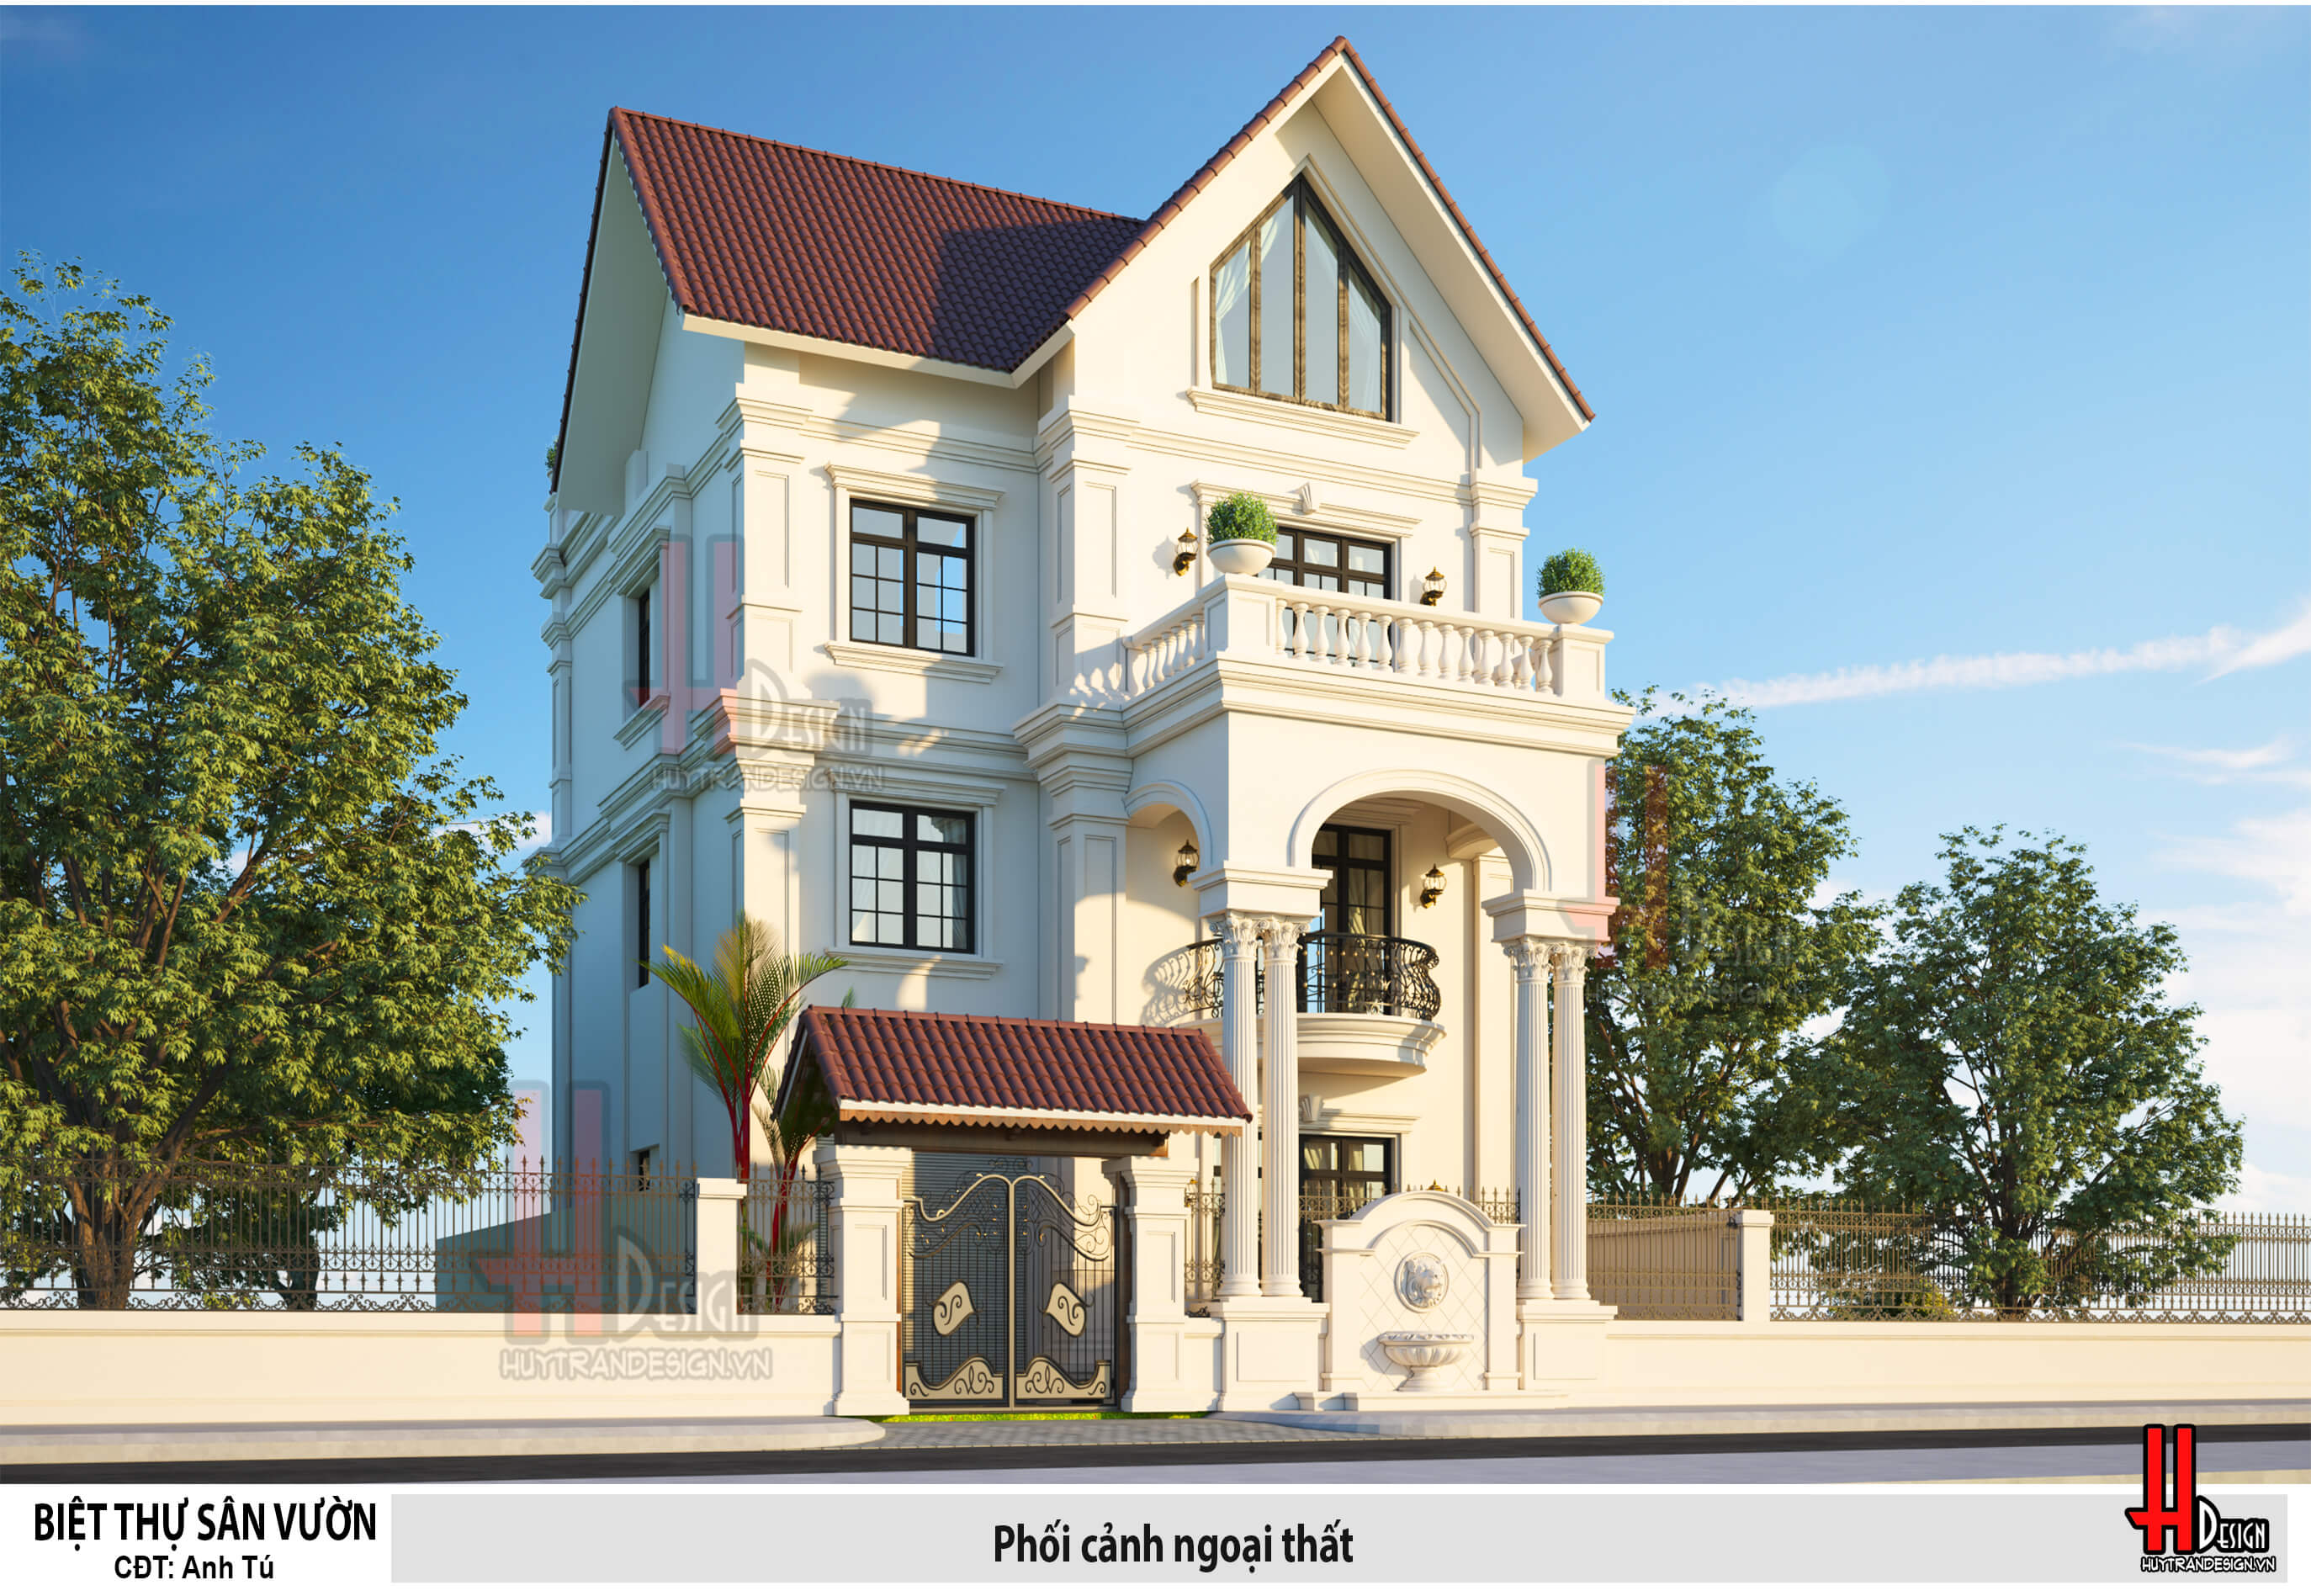 Thiết kế nhà biệt thự 3 tầng đẹp mái thái phong cách tân cổ điển - Huytrandesign